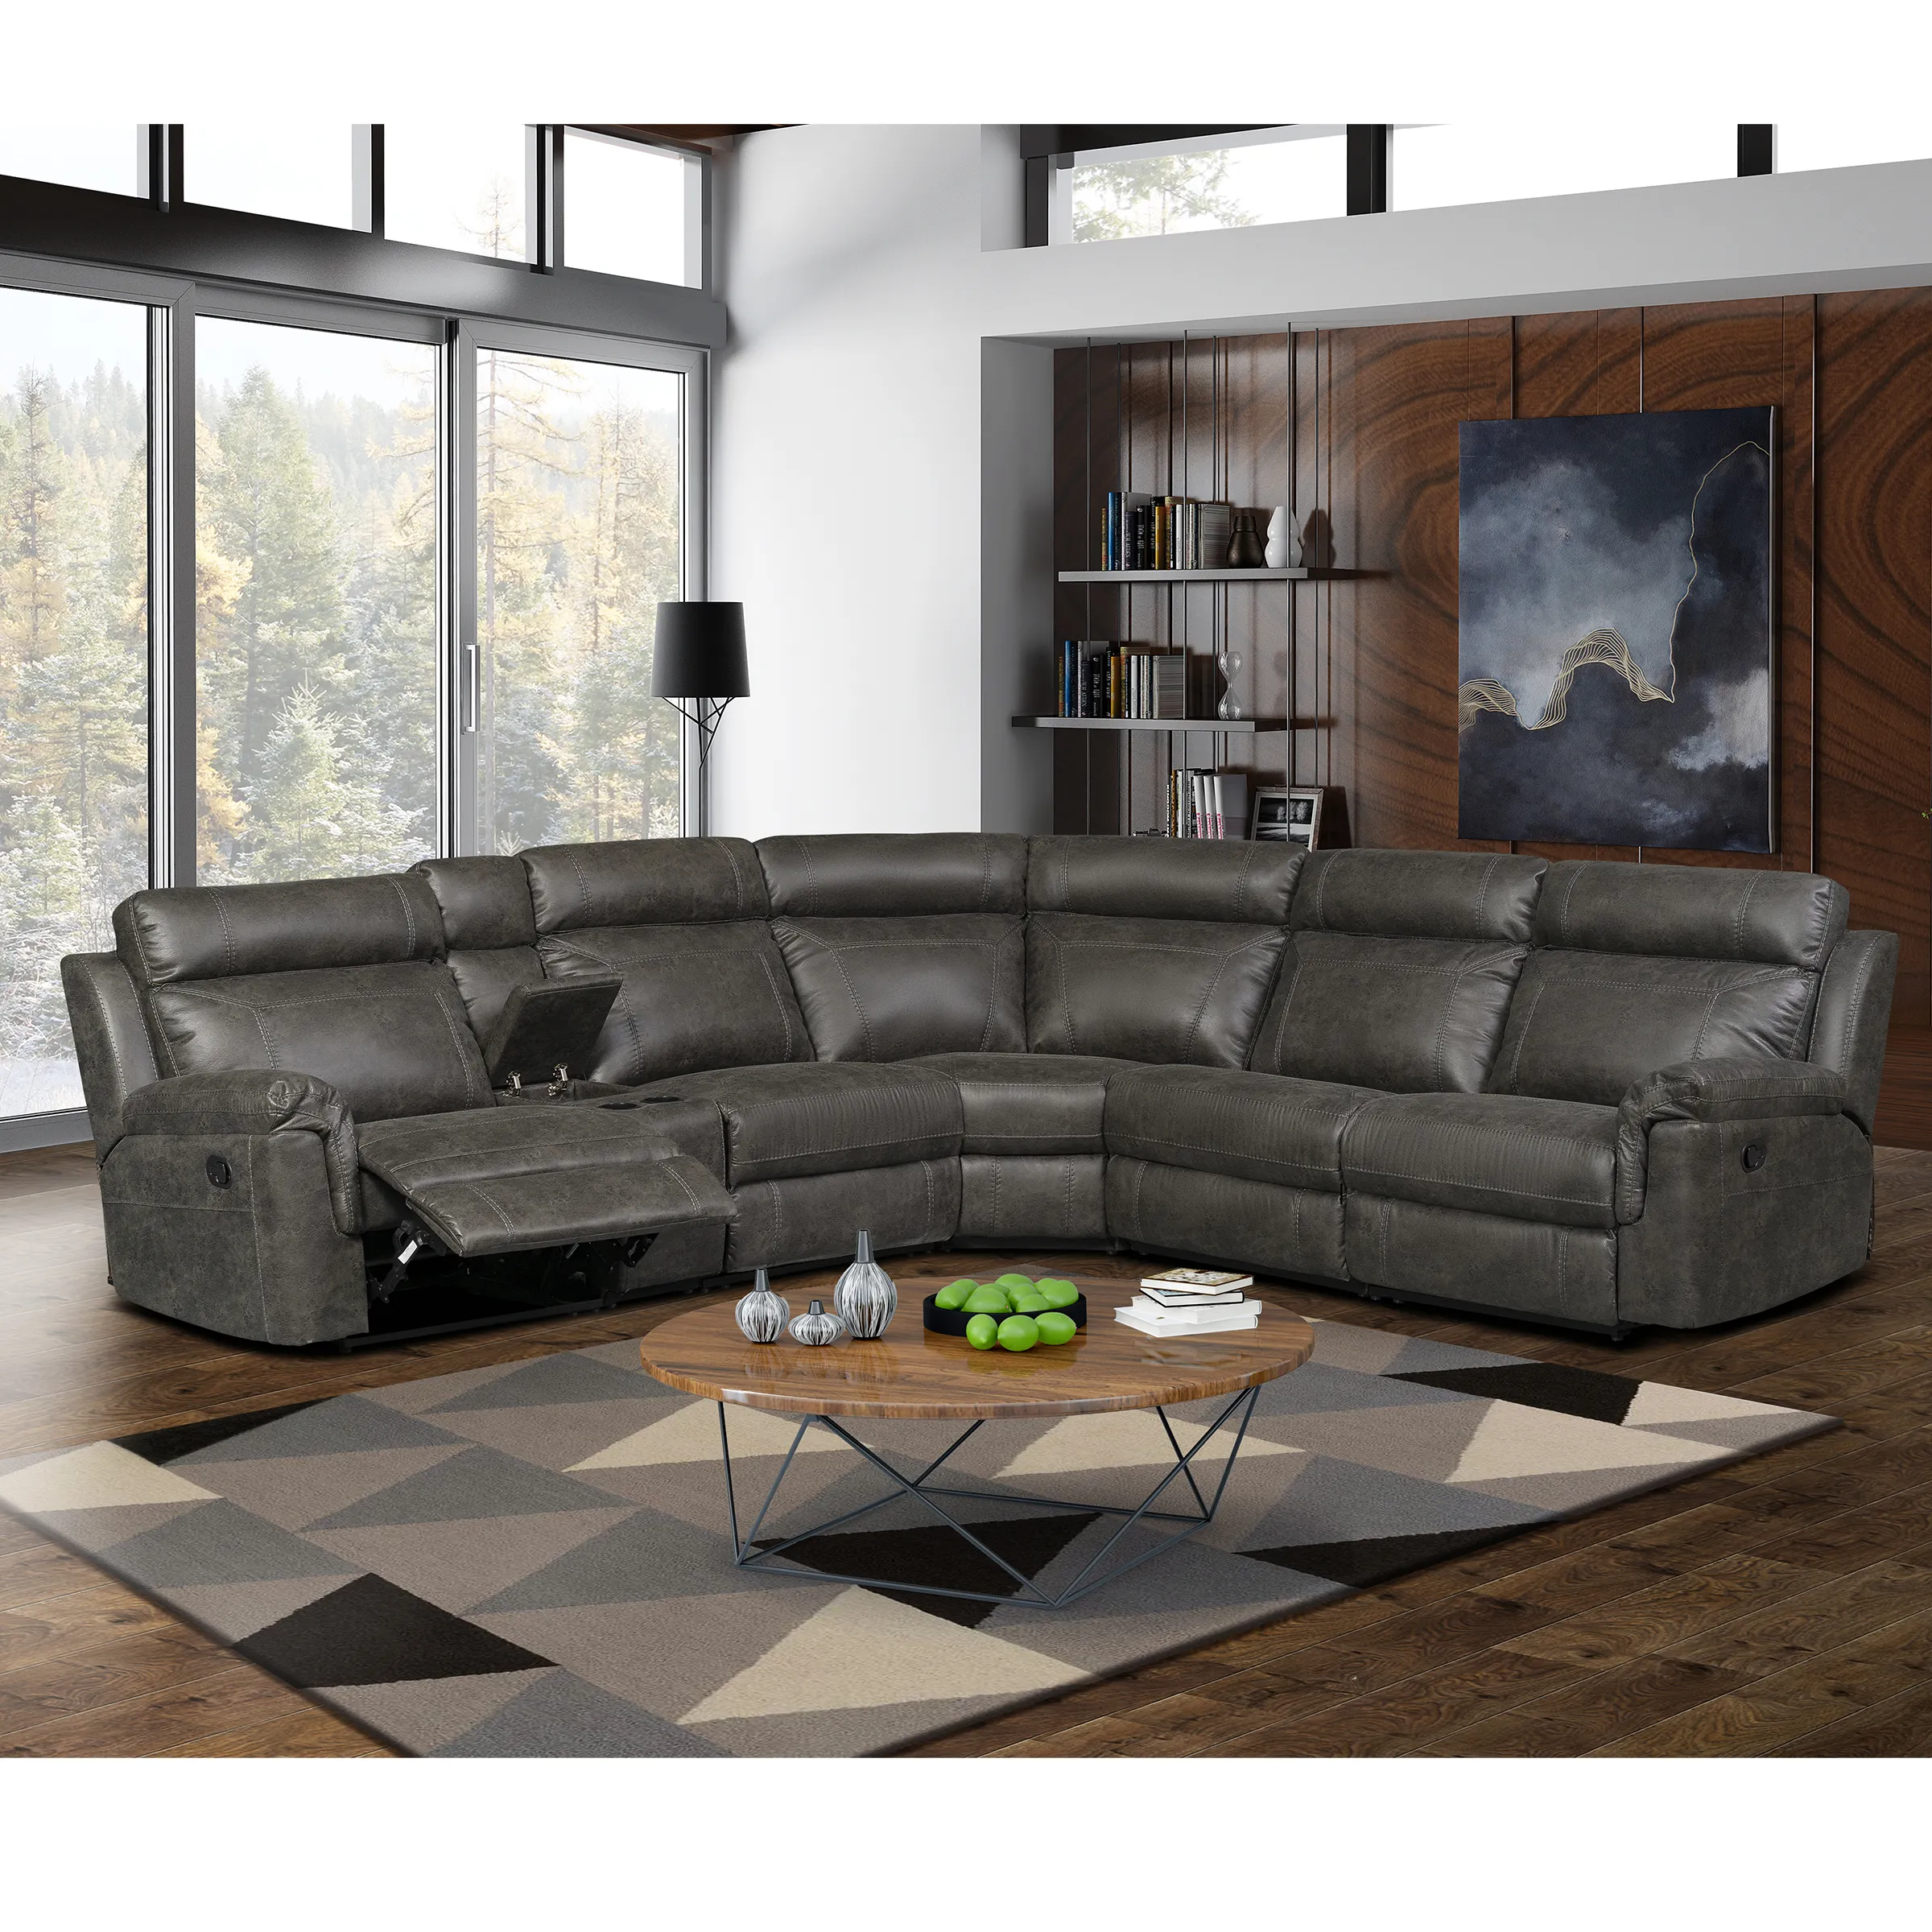 Sillón eléctrico de 7 plazas para sala de estar, sillón reclinable, conjunto de sofás reclinables con potencia